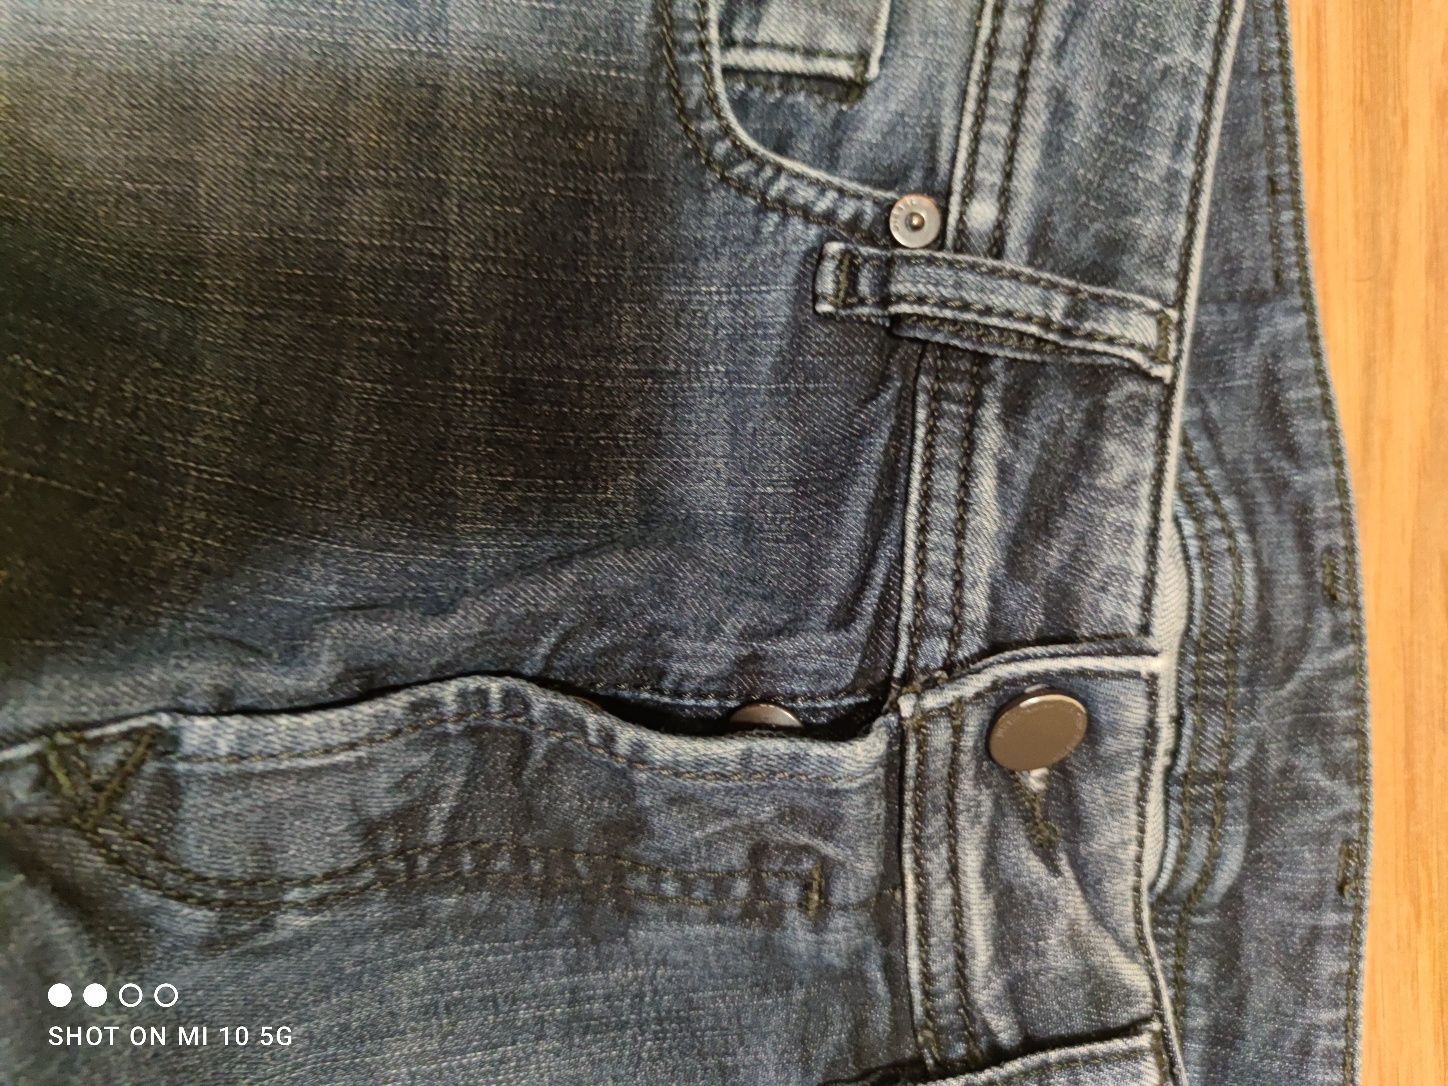 Diesel Sleenker jeansy przecierane Slim Skinny 28/30 granatowe damskie